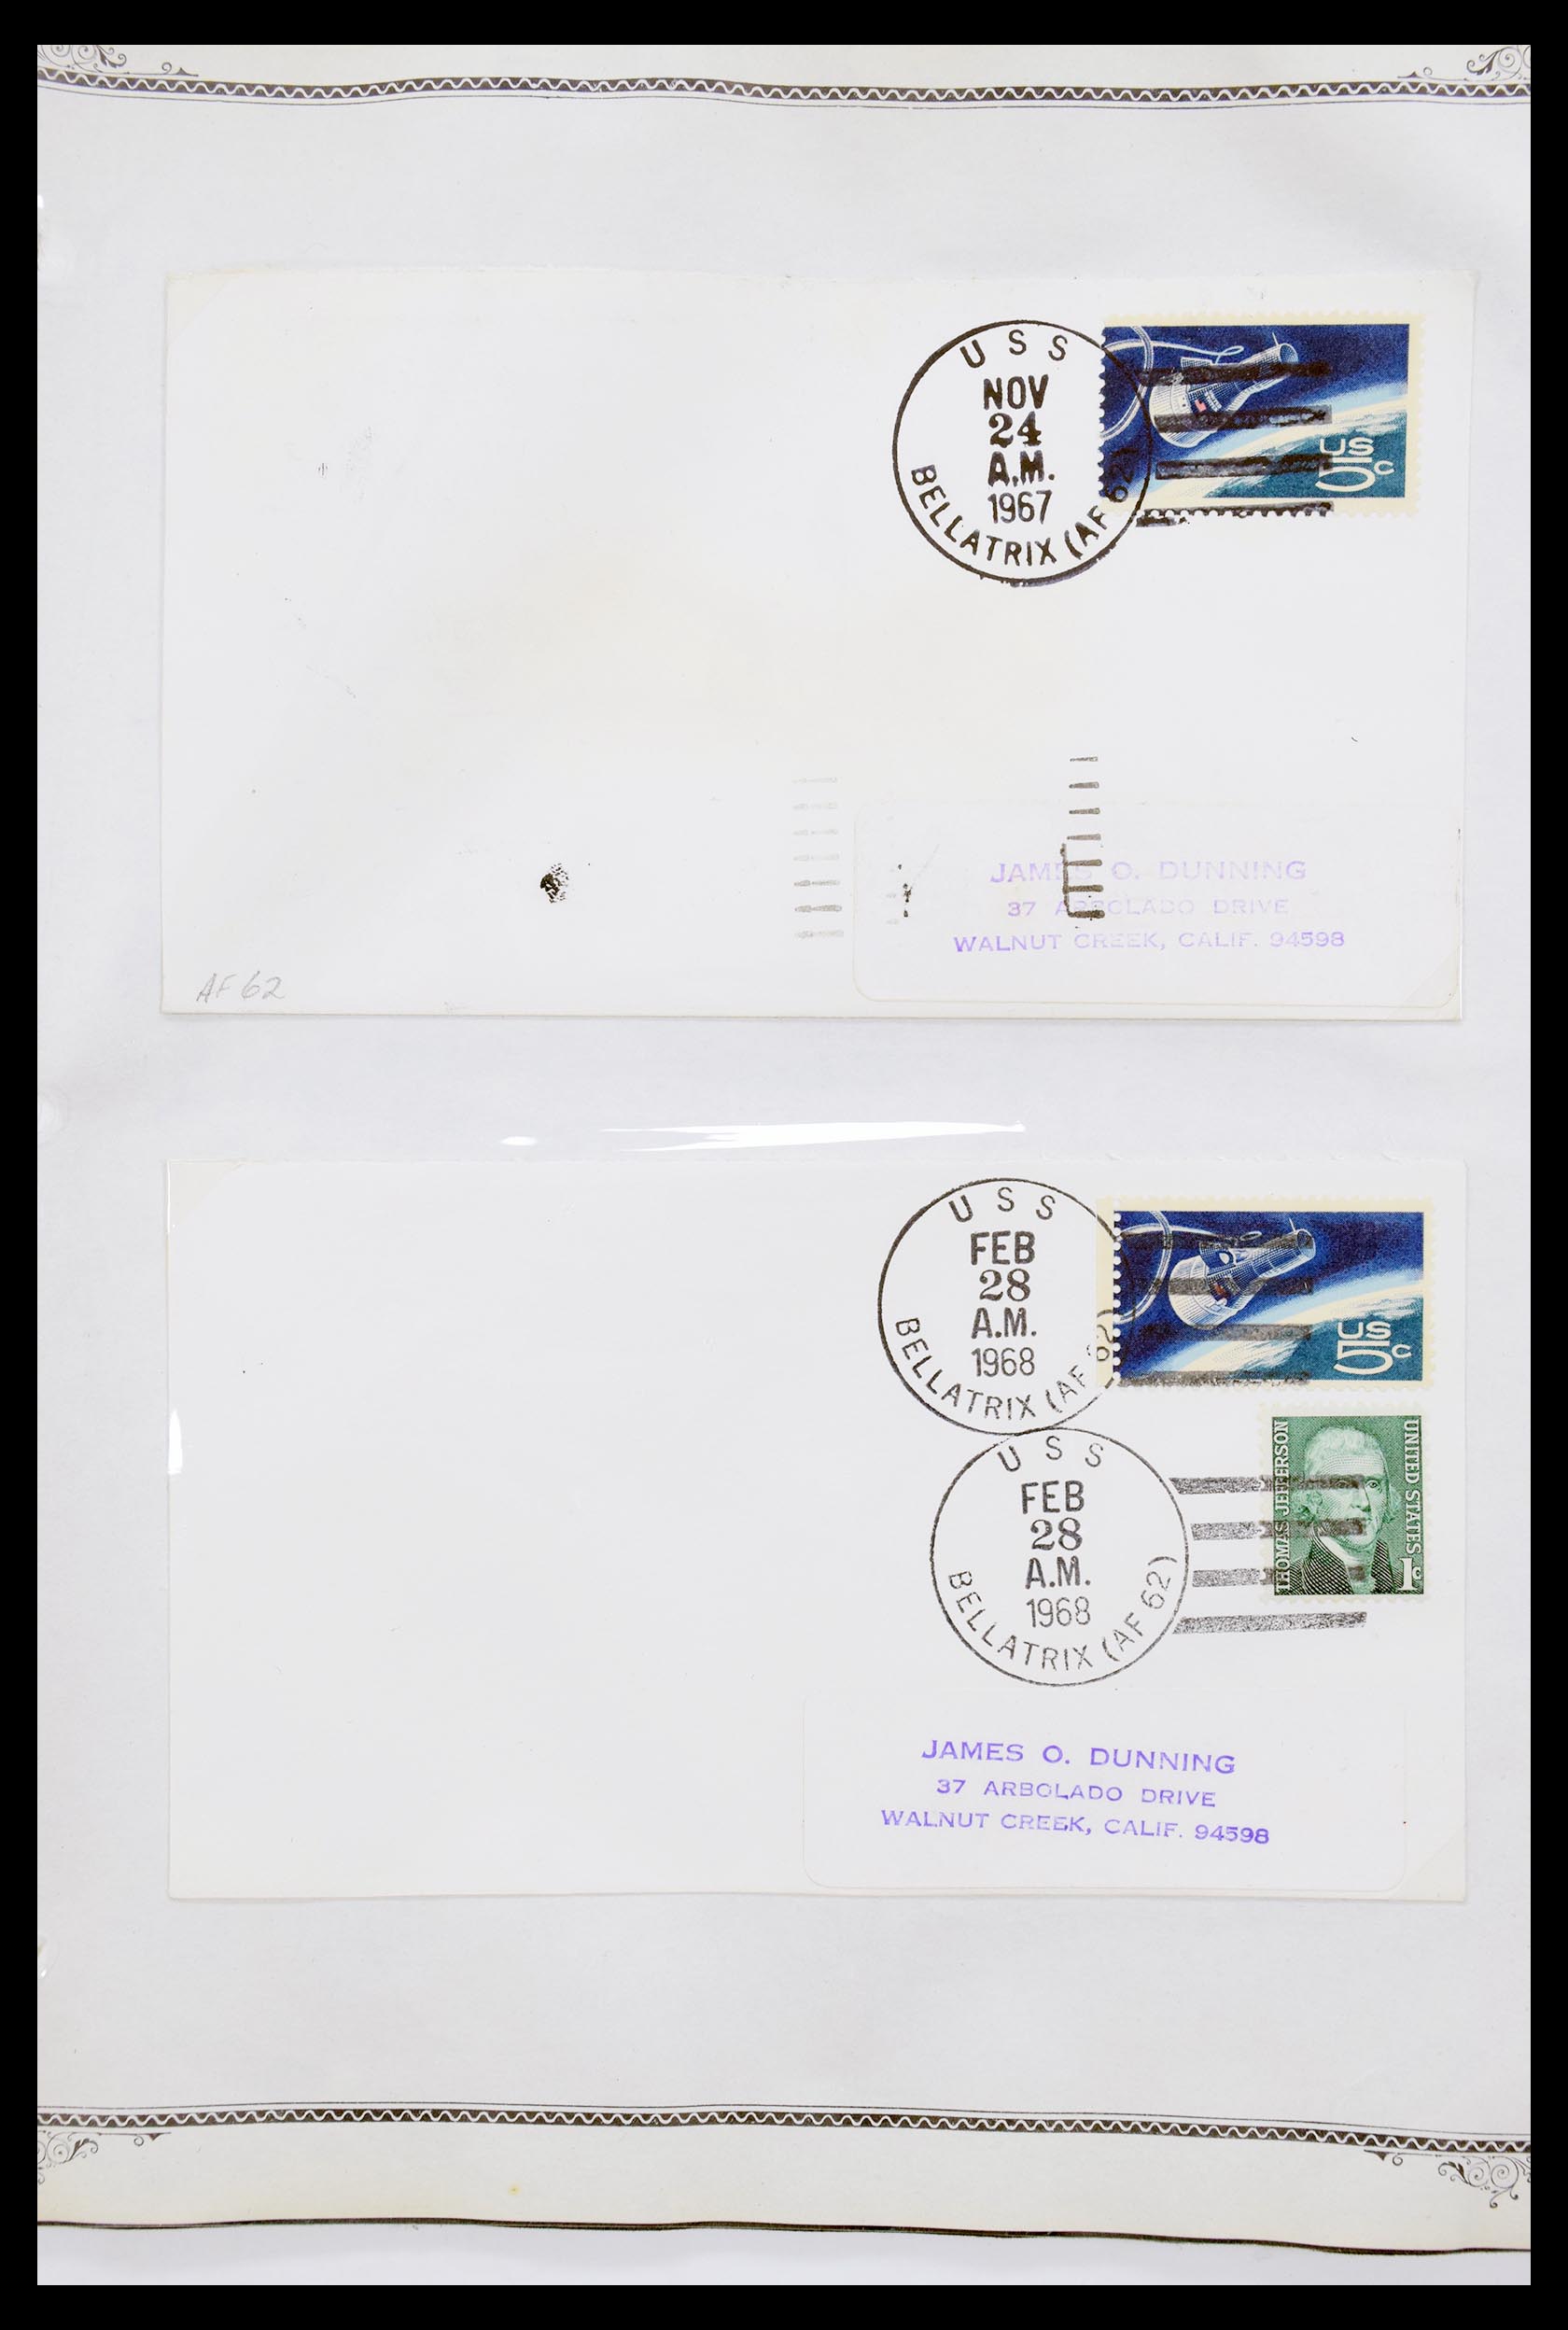 30341 032 - 30341 USA scheepspost brieven 1930-1970.